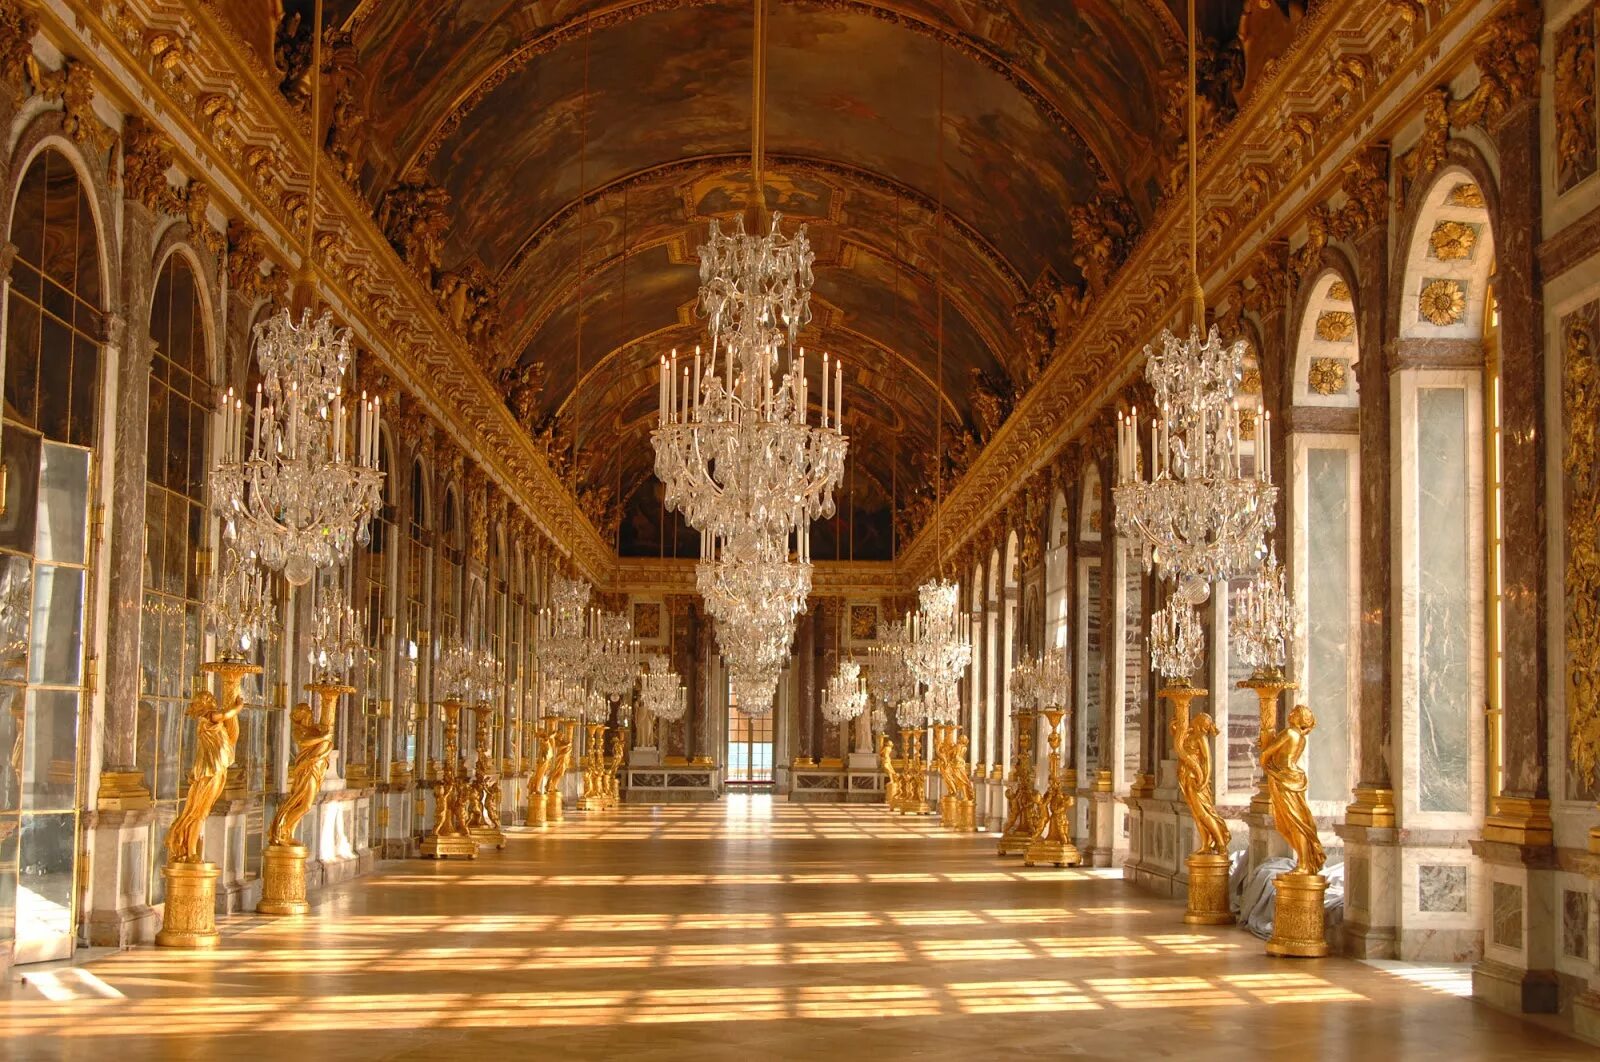 Версальский дворец, Версаль дворец Версаля. Версальский дворец Барокко. Версальский дворец Анфилада залов. Зеркальная галерея Версальского дворца. Дворцовые своды